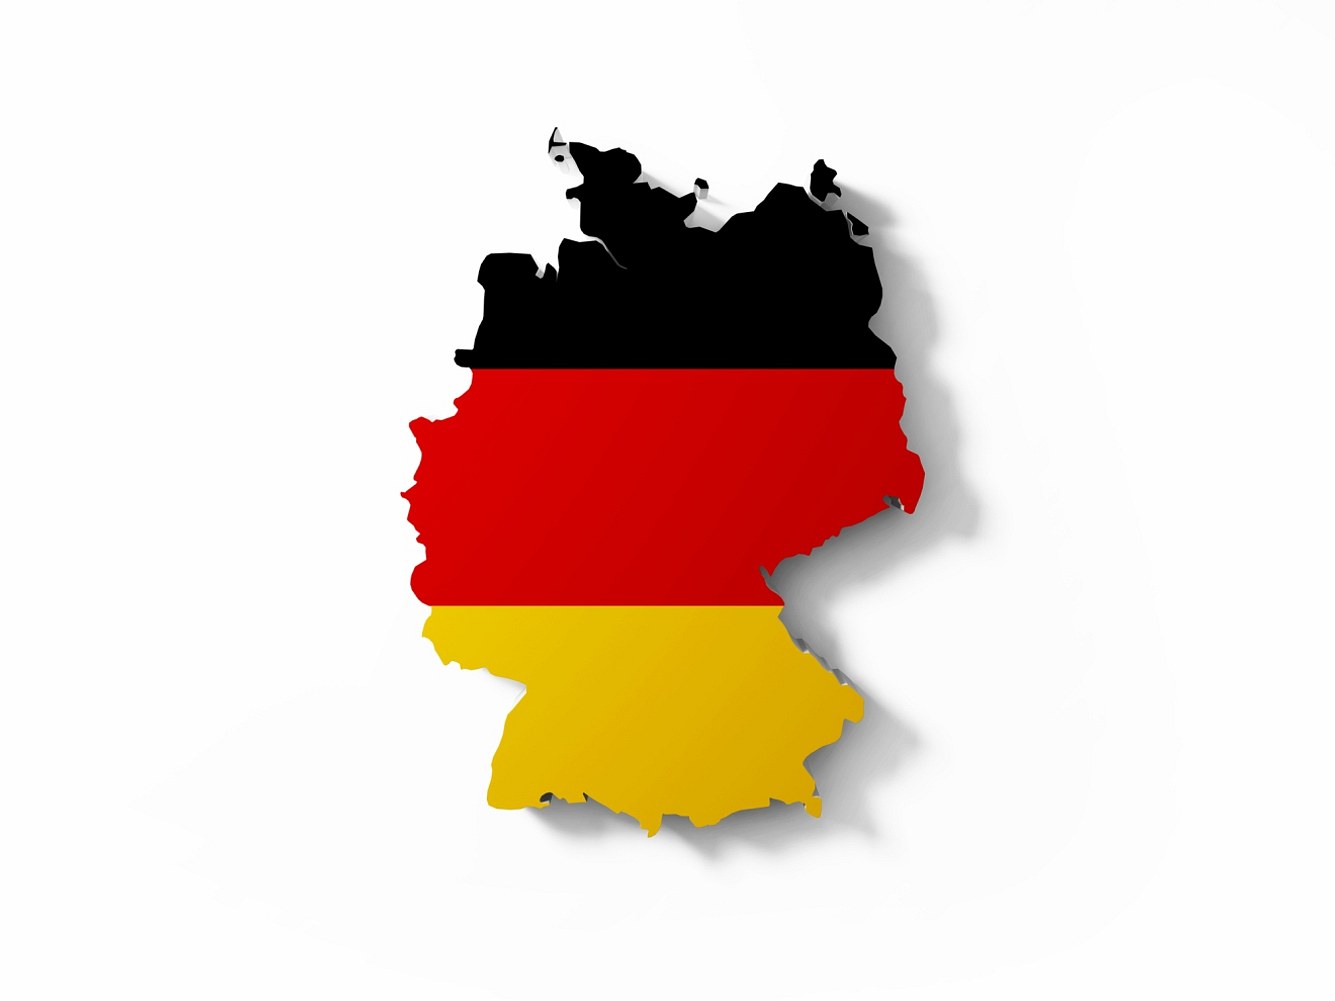 Familiennamen: Das sind die 10 häufigsten Nachnamen Deutschlands